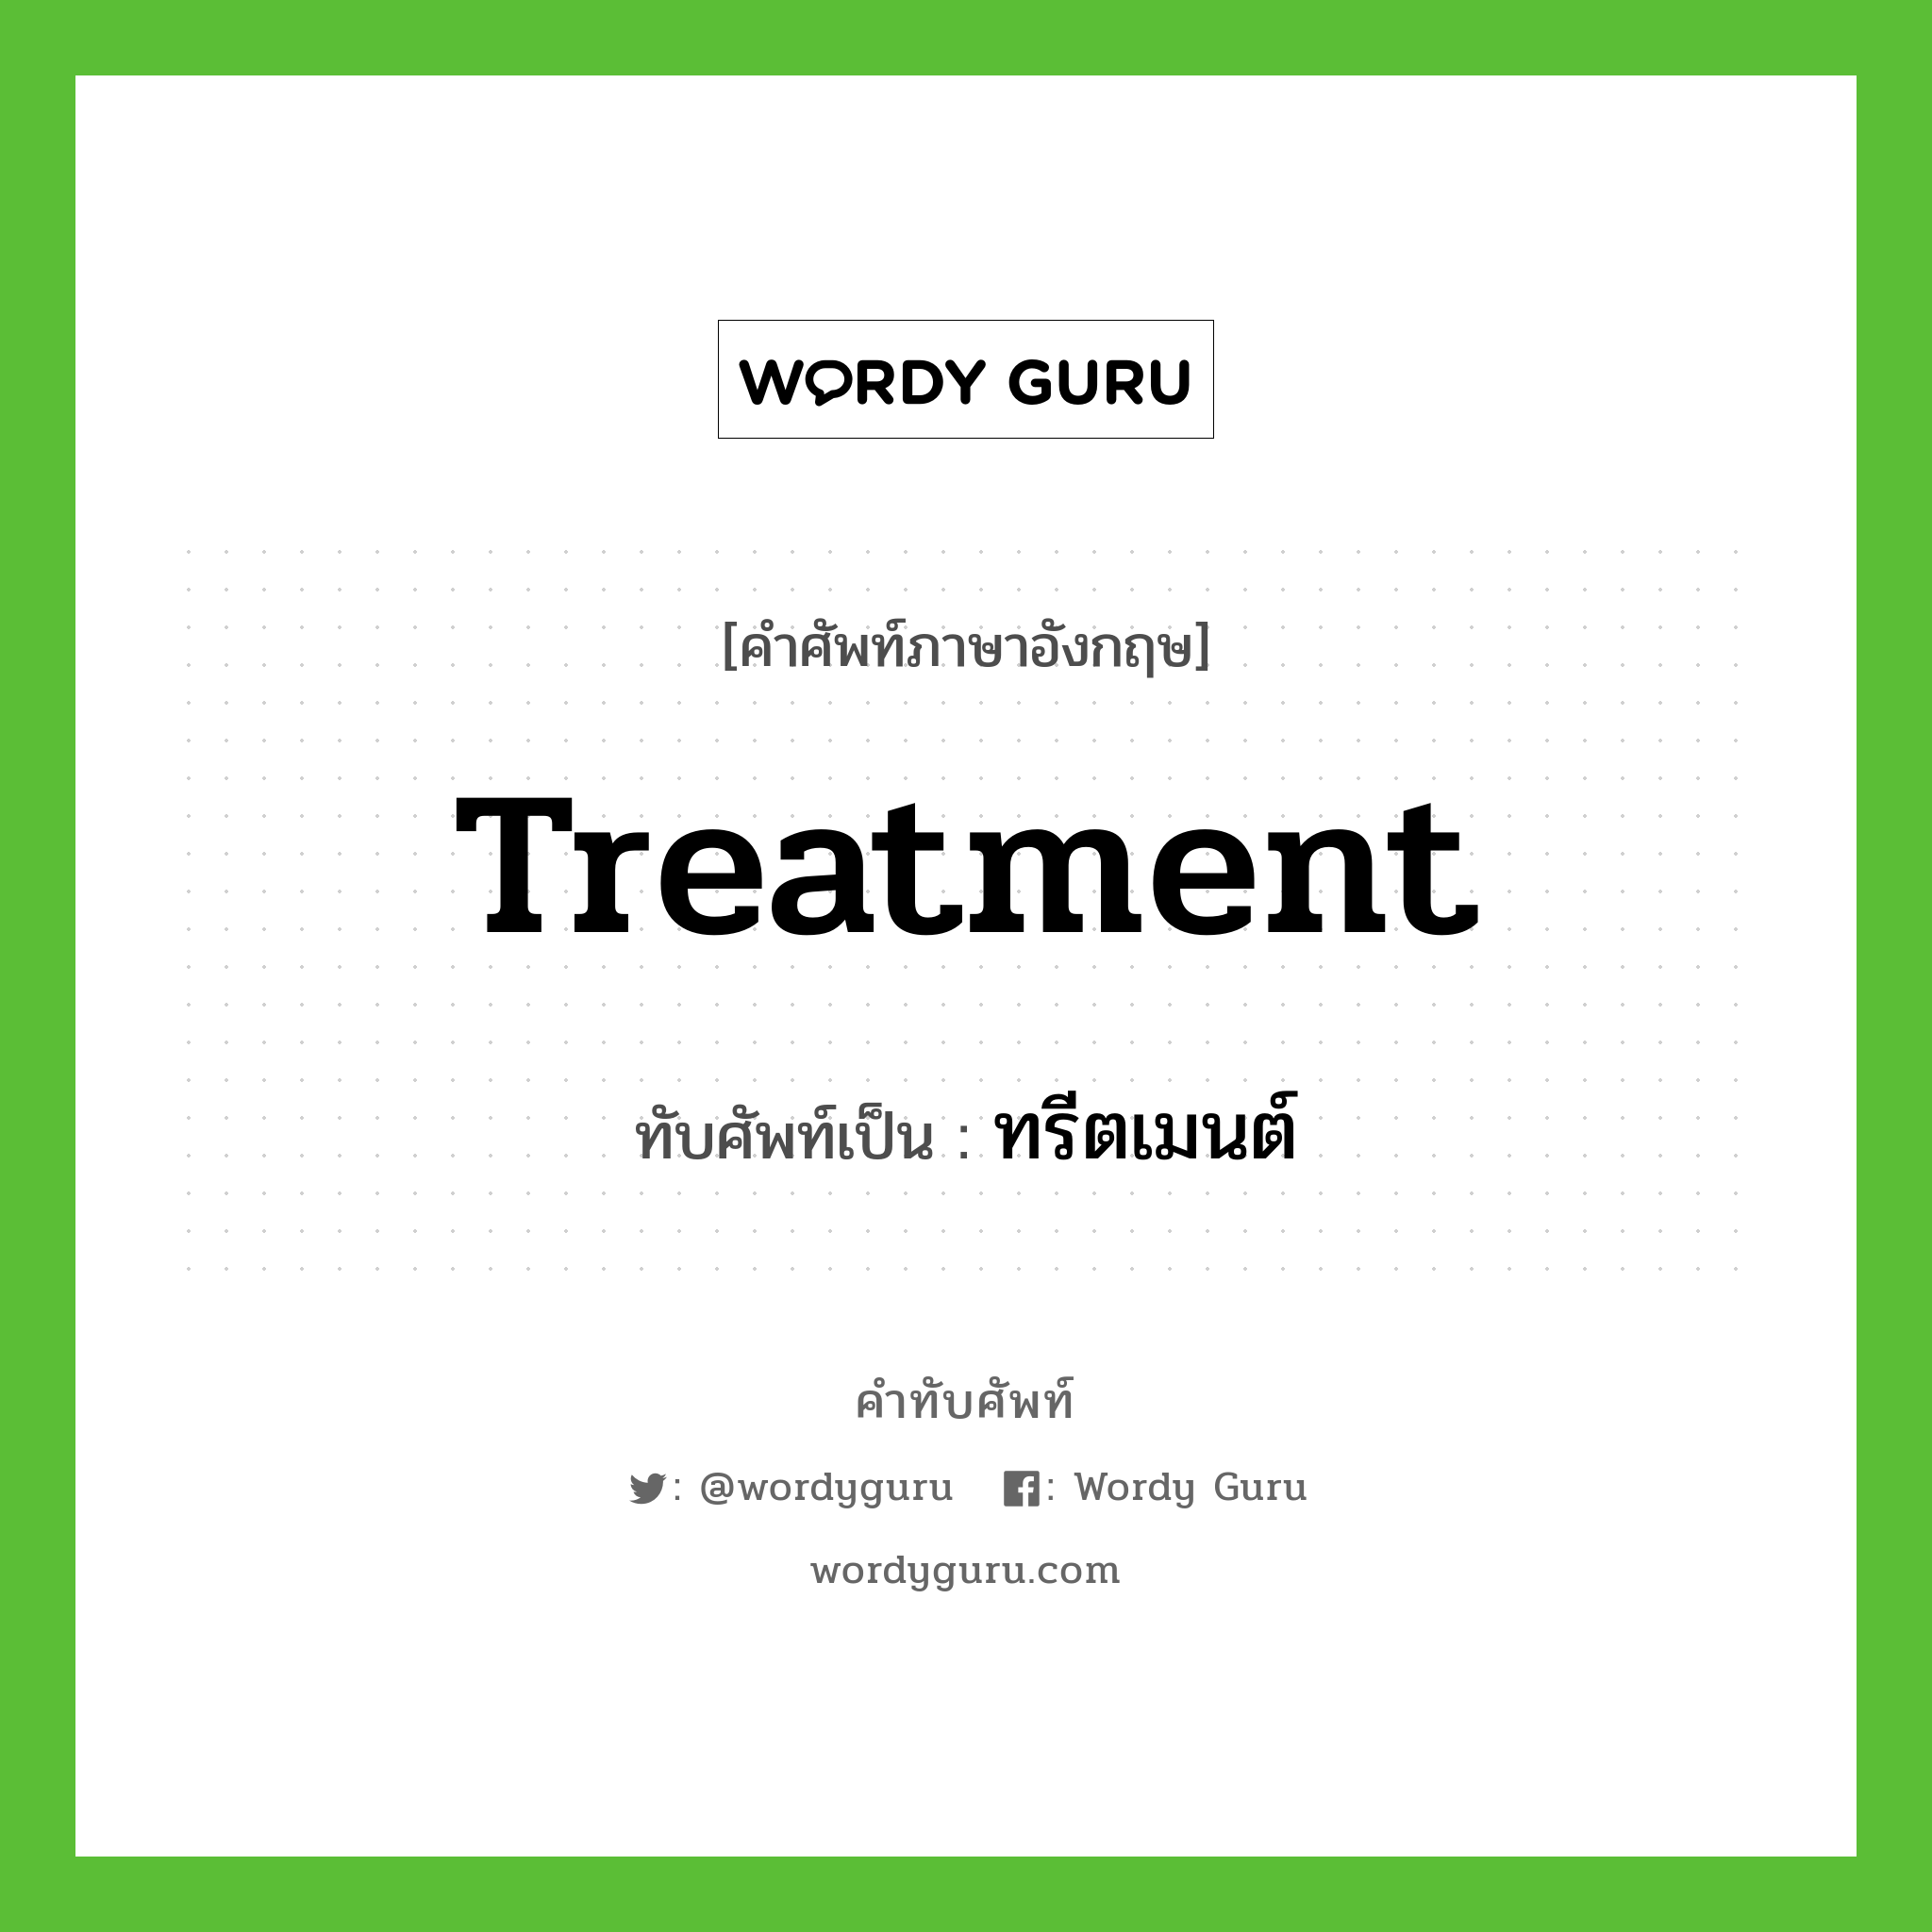 Treatment เขียนเป็นคำไทยว่าอะไร?, คำศัพท์ภาษาอังกฤษ Treatment ทับศัพท์เป็น ทรีตเมนต์